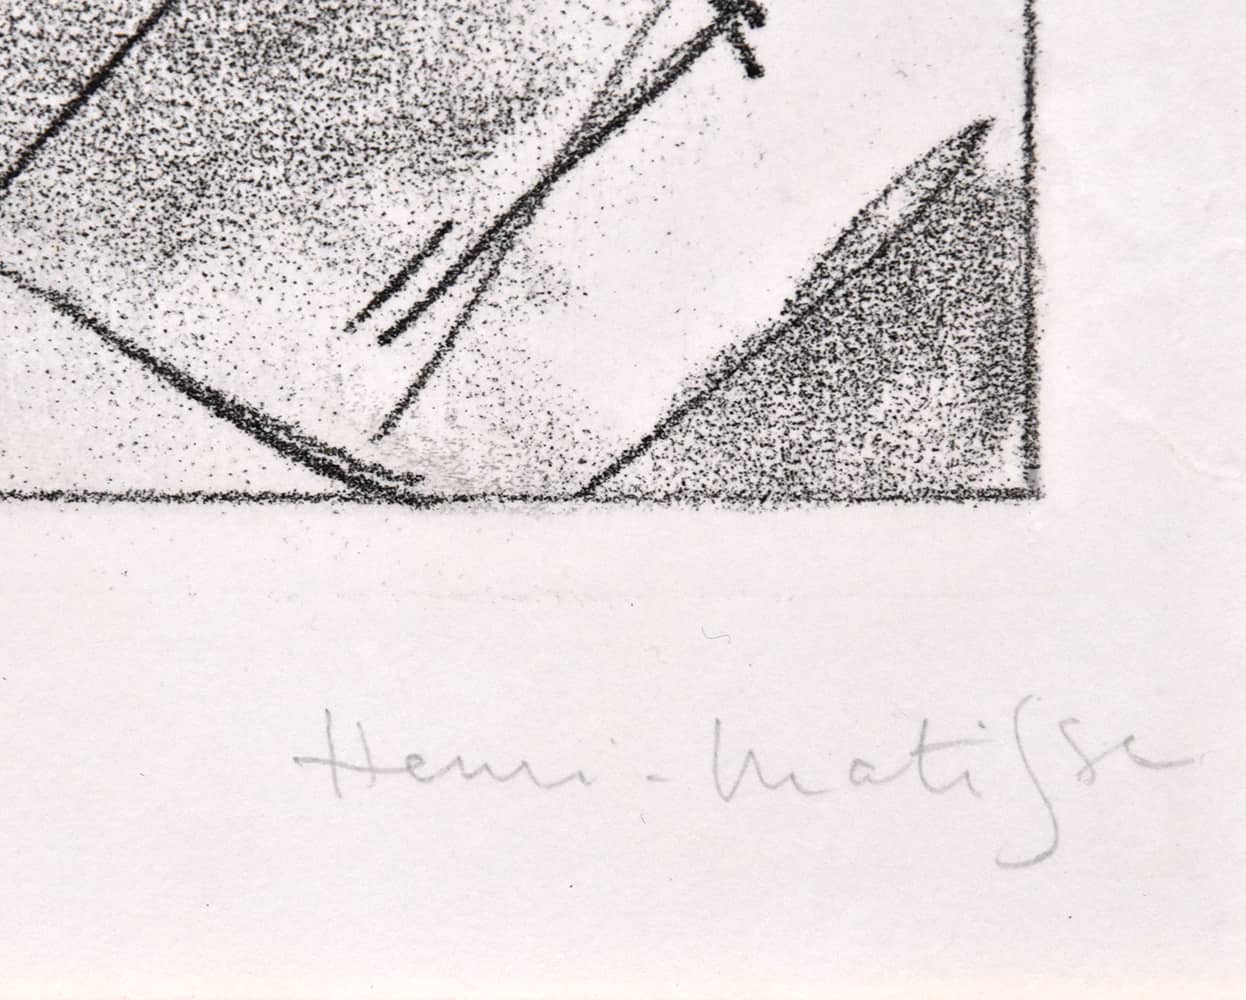 Henri Matisse signature, Calypso from Ulysses, 1935